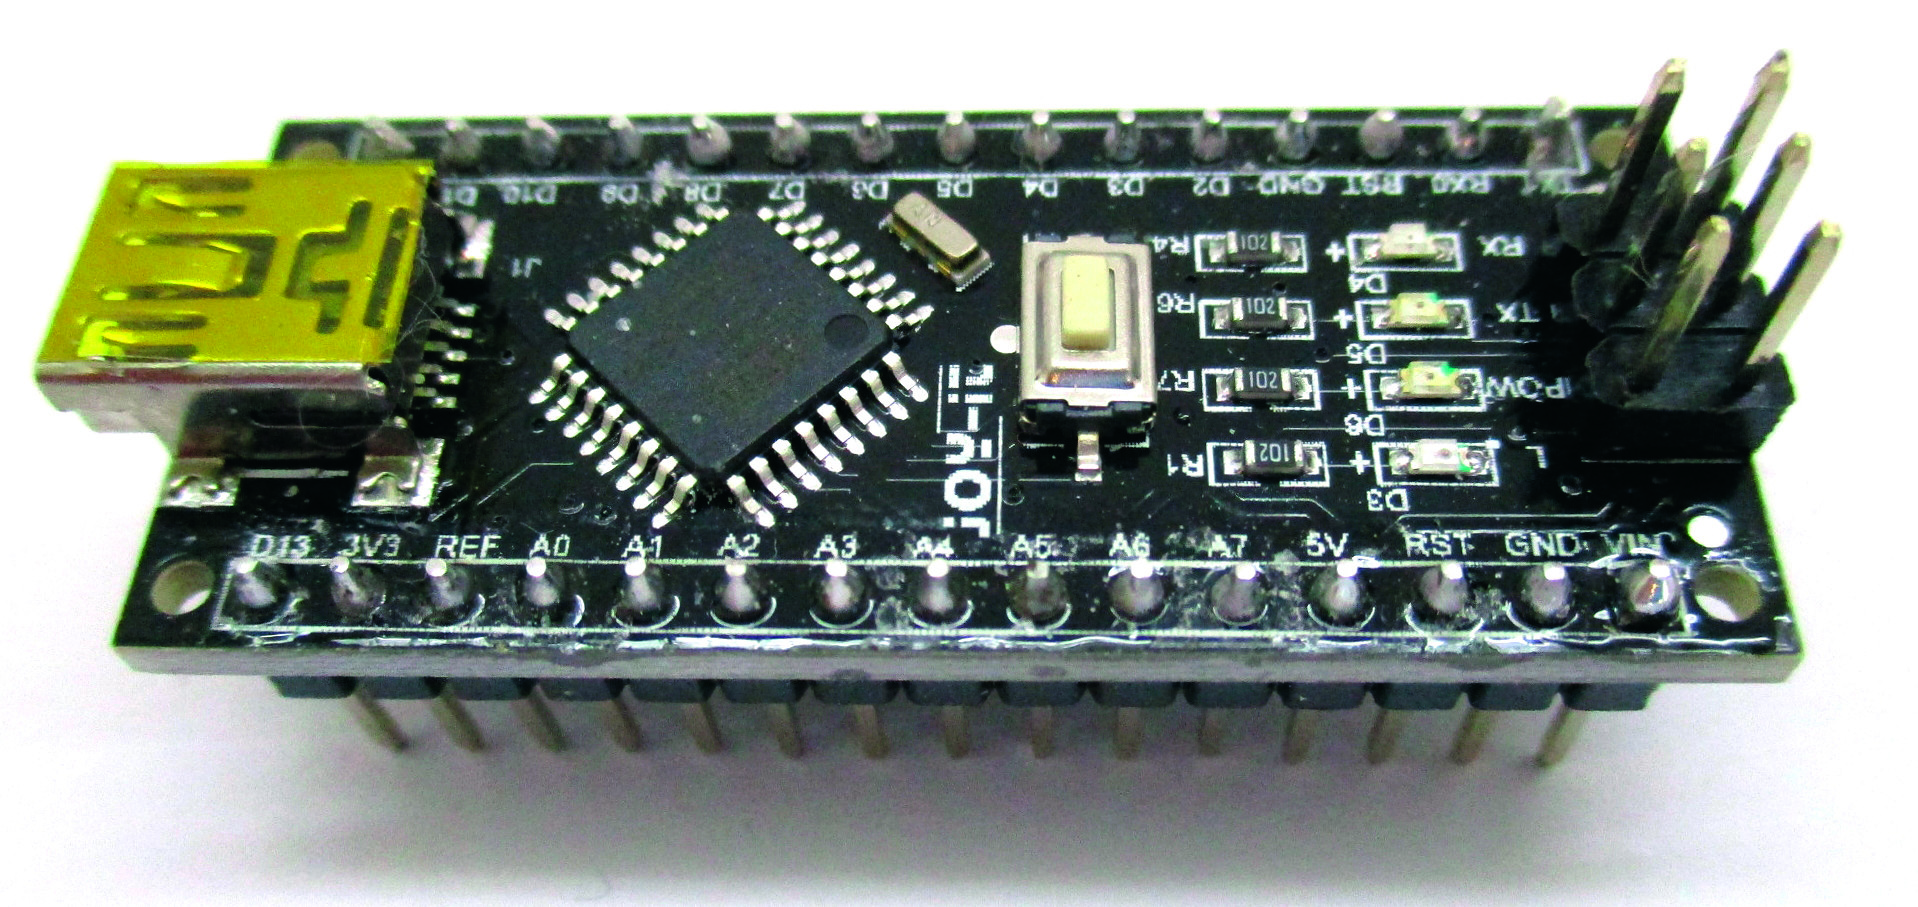 Microcontroller-kits voor dummies